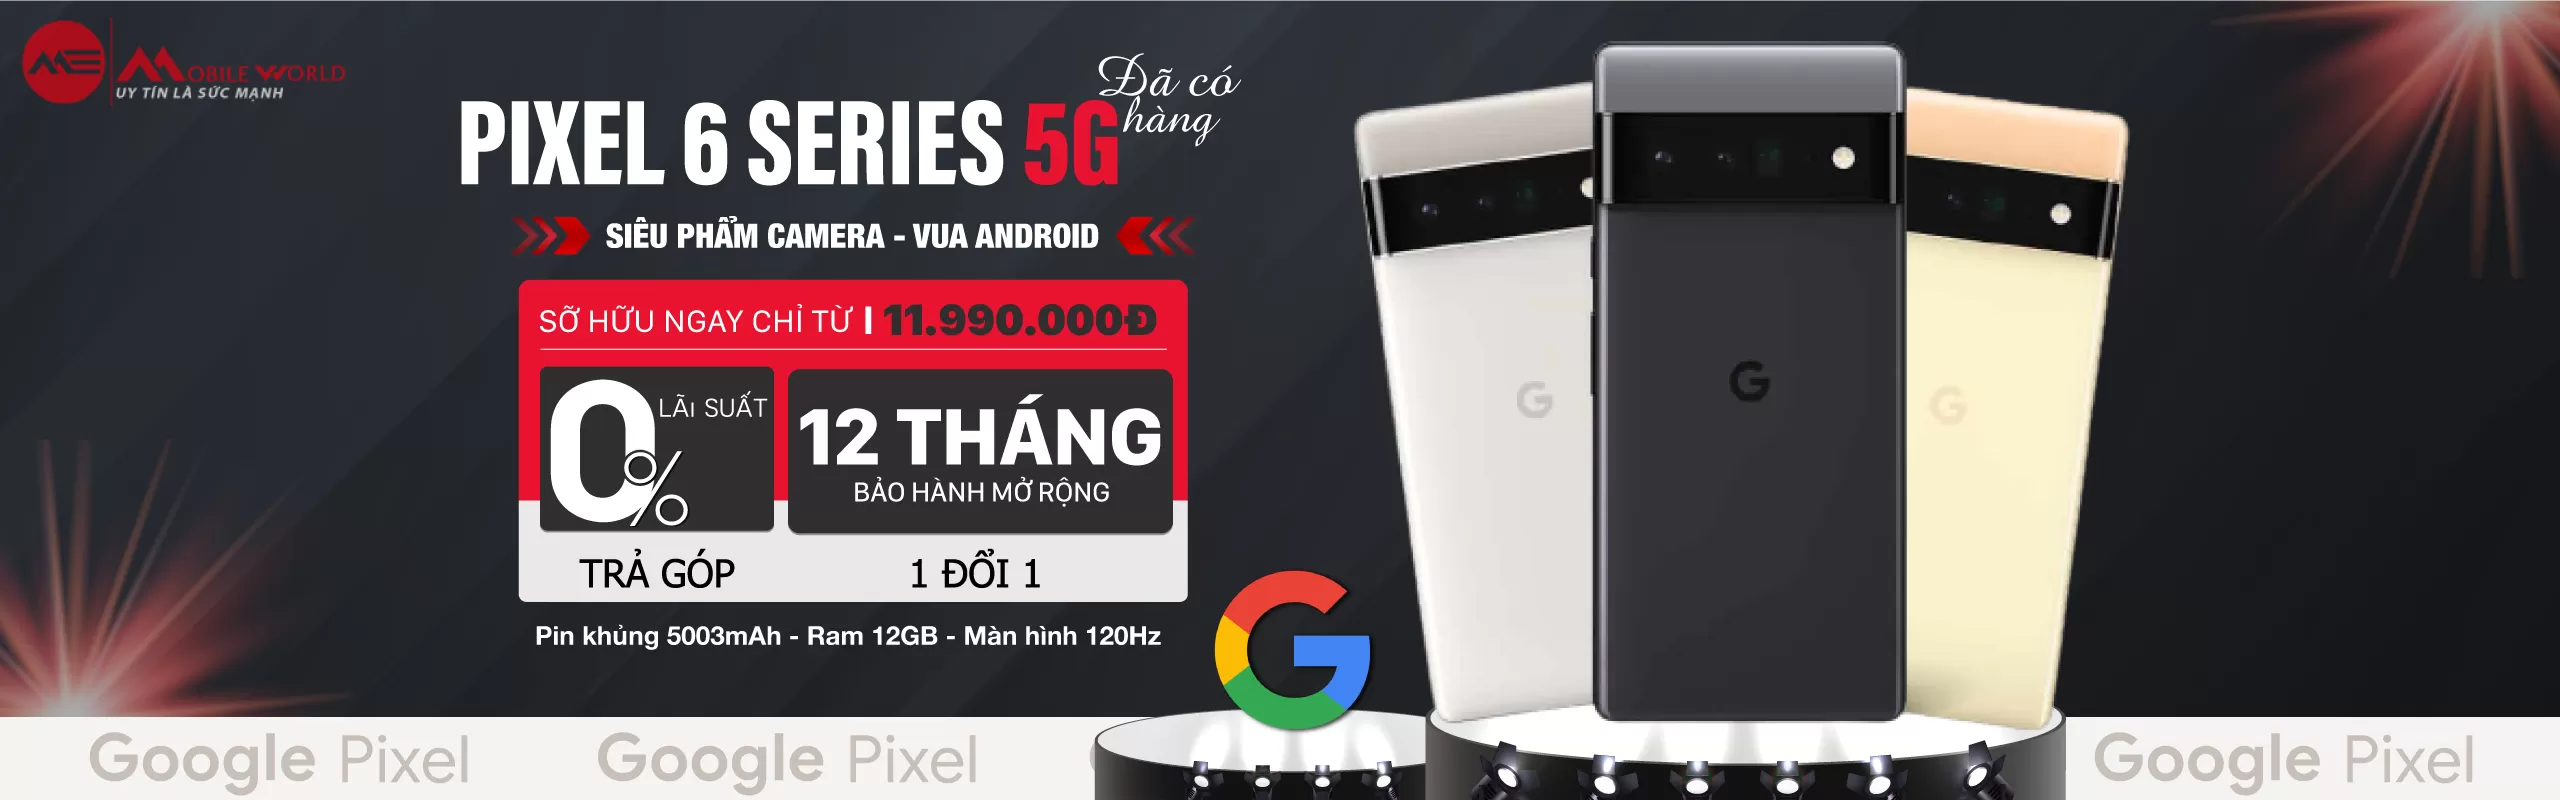 Vua Android Pixel 6 Series - Giảm Sốc 8 Triệu